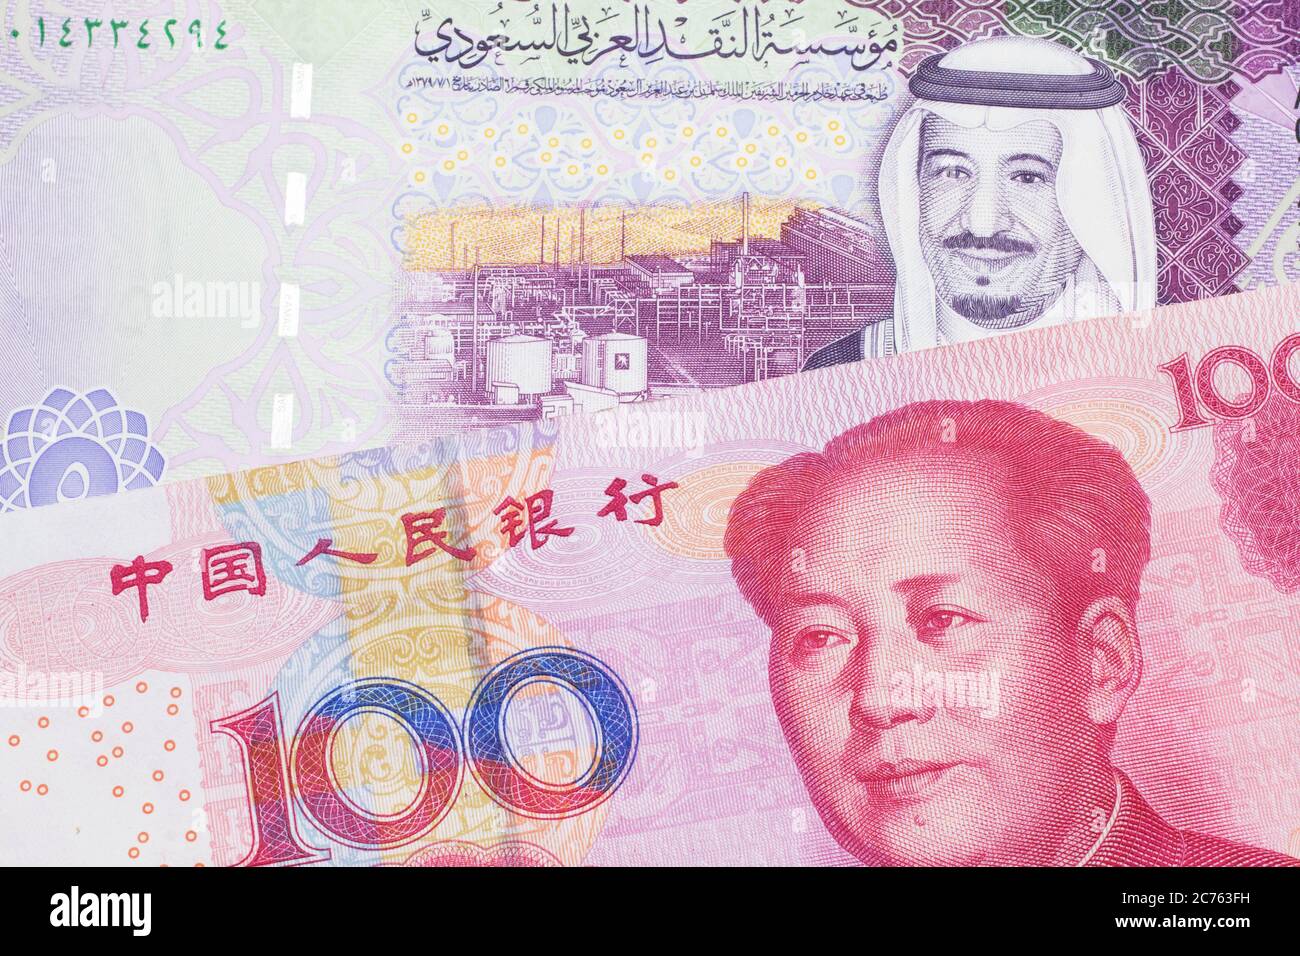 Saudi riyal to china